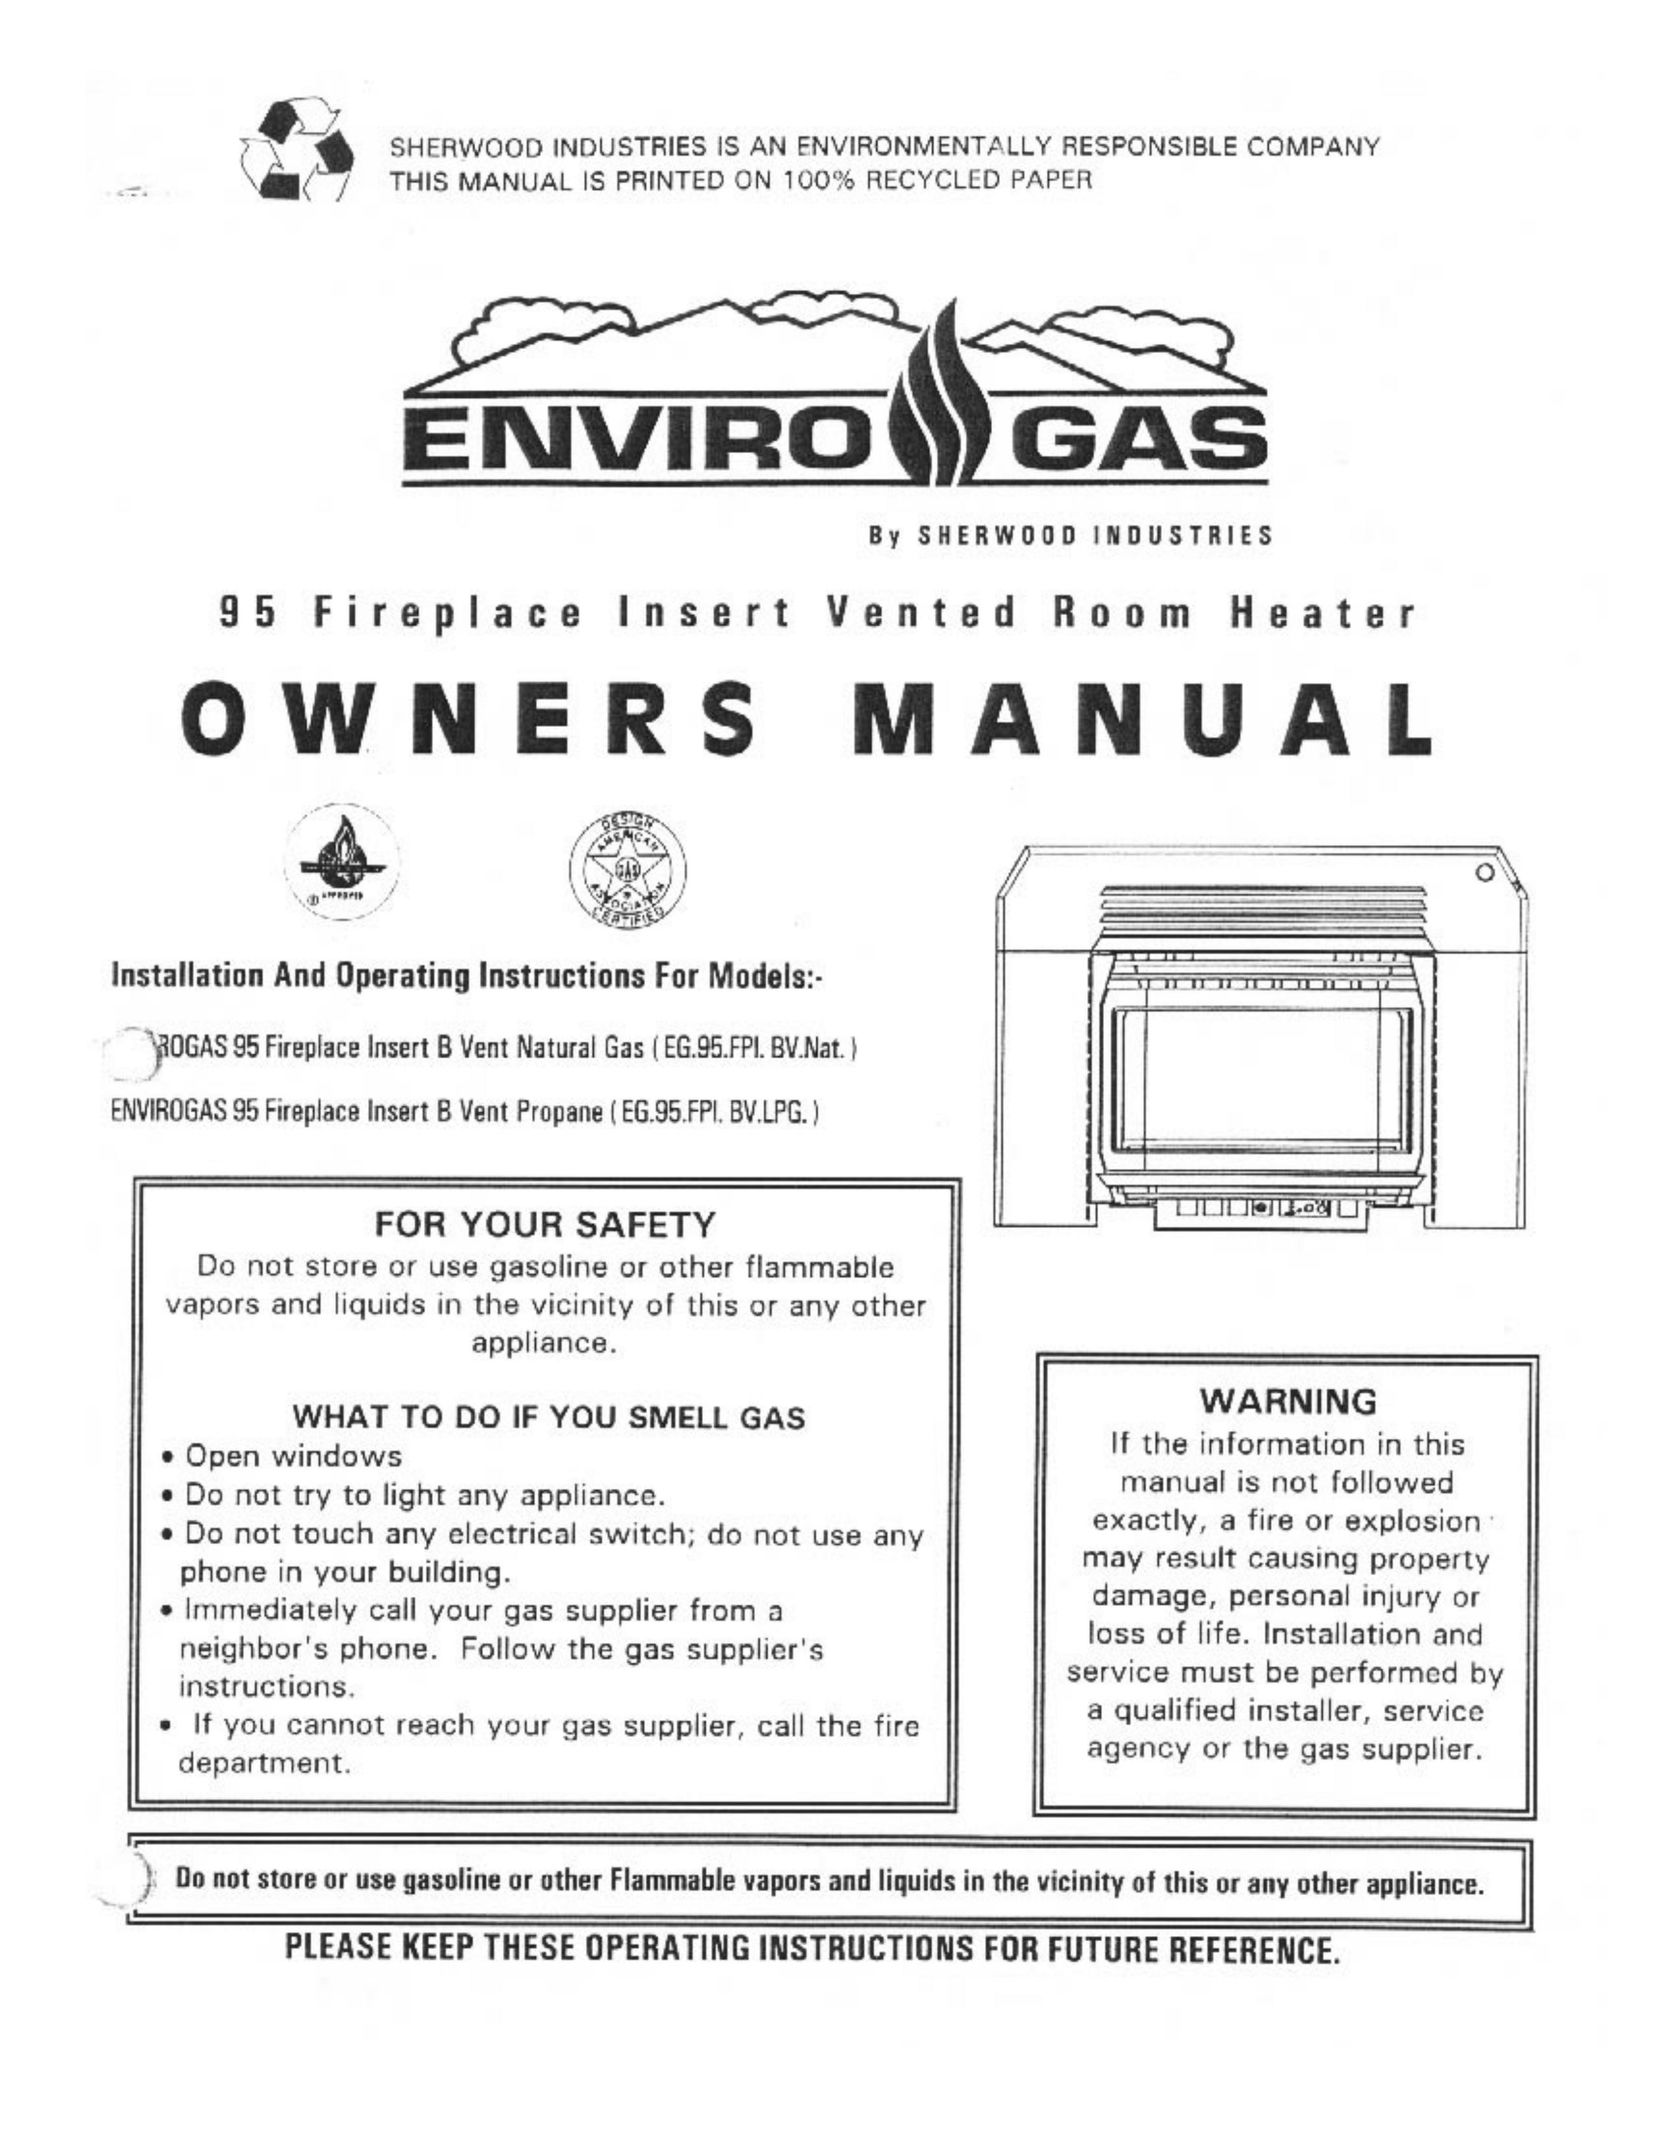 Enviro EG.95.FPI.BV.LPG Indoor Fireplace User Manual